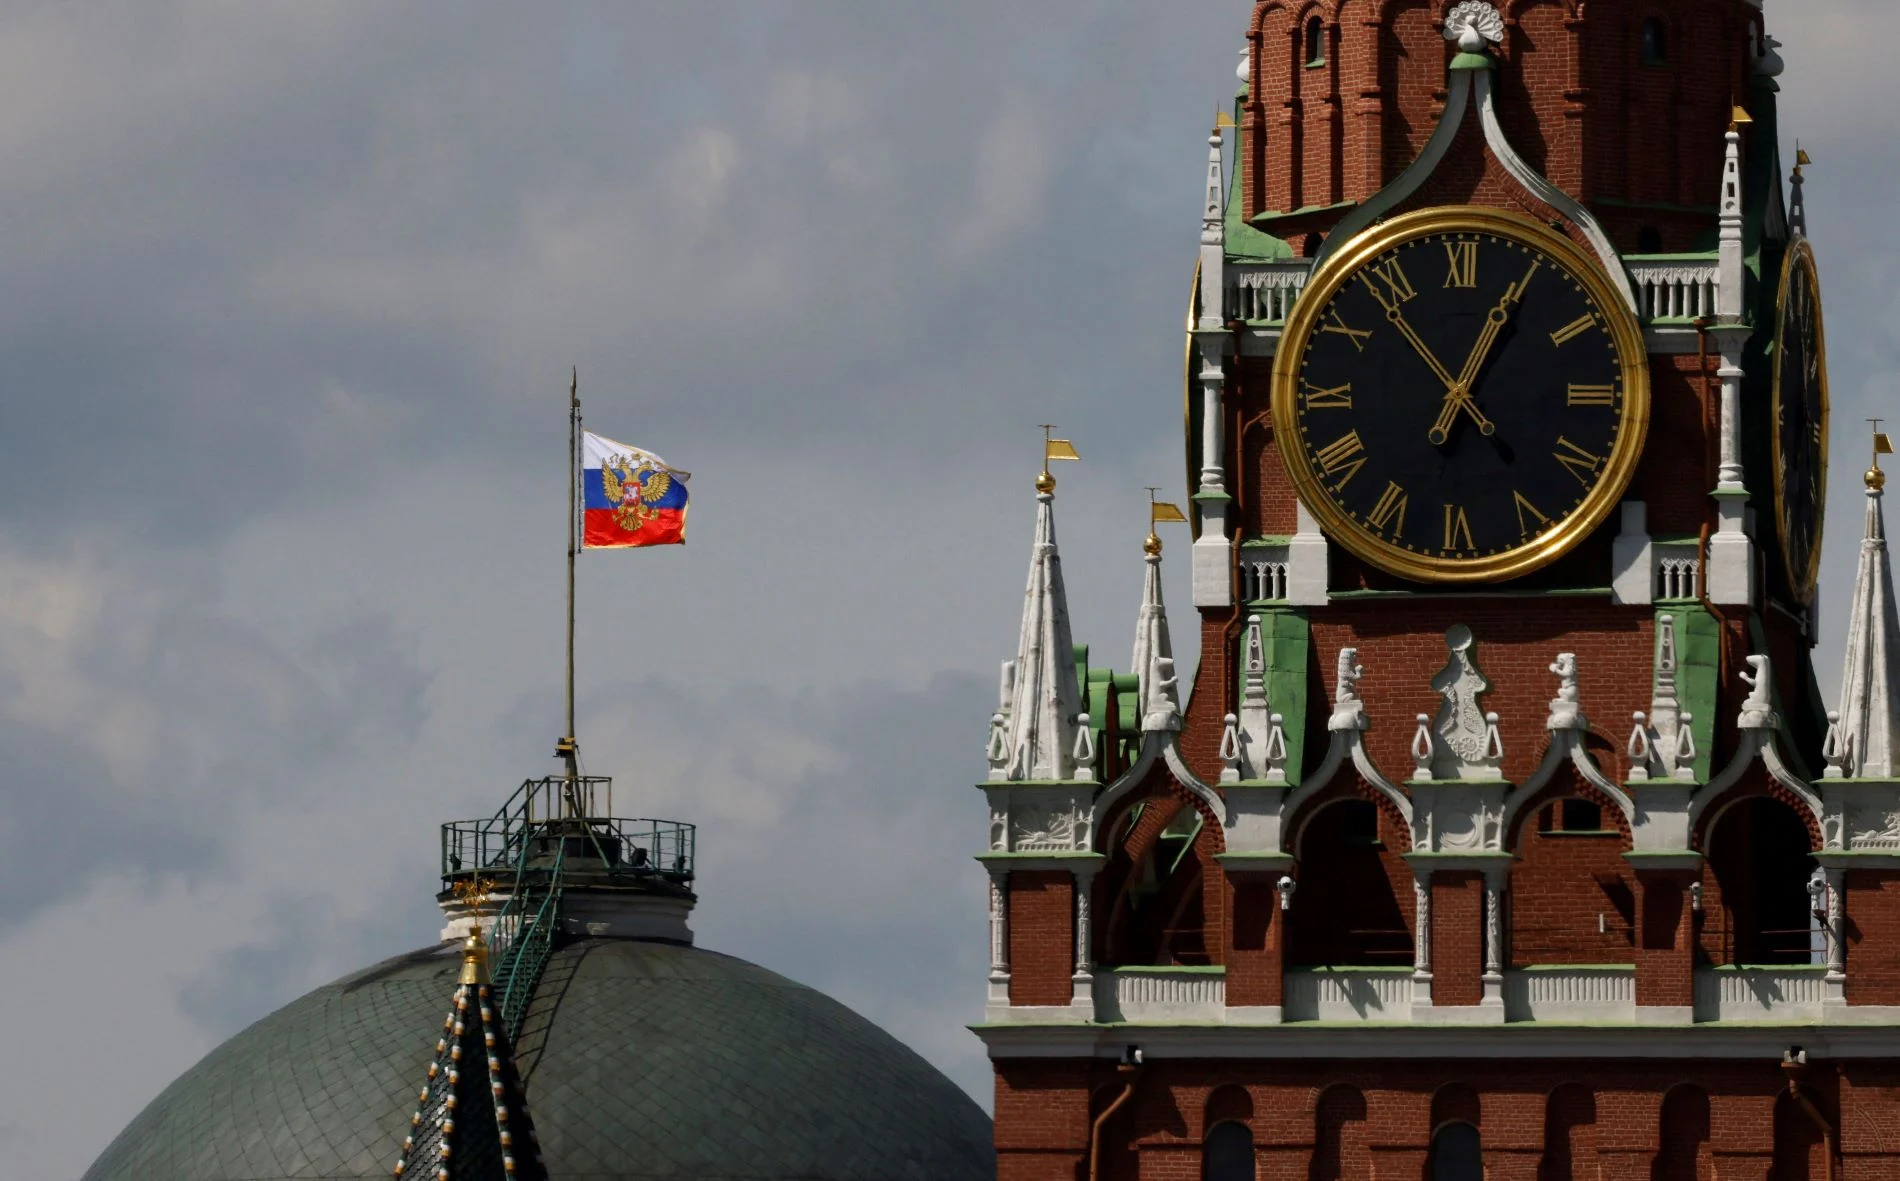 Τα πέντε σενάρια για τη Ρωσία του μέλλοντος: Τι θα γίνει όταν ο Πούτιν δεν θα υπάρχει πια